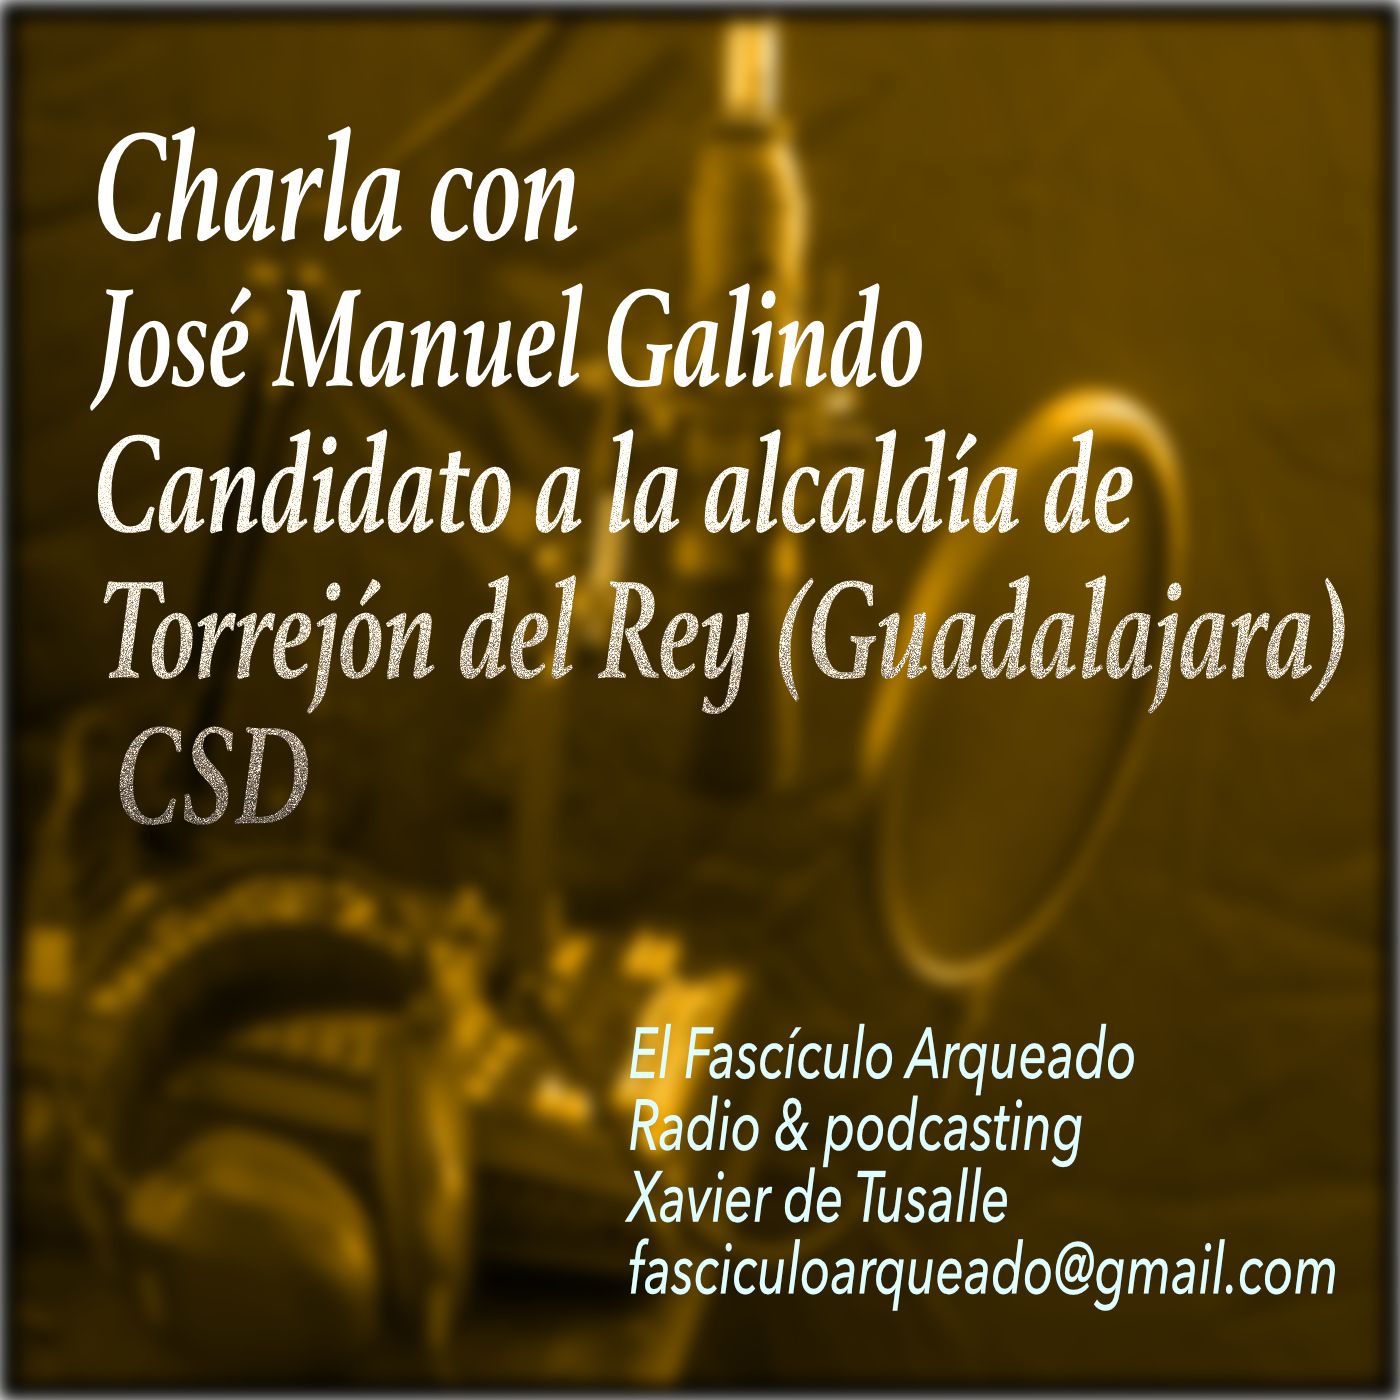 Charlo con José Manuel Galindo, candidato a la alcaldía de Torrejón del Rey (Guadalajara)